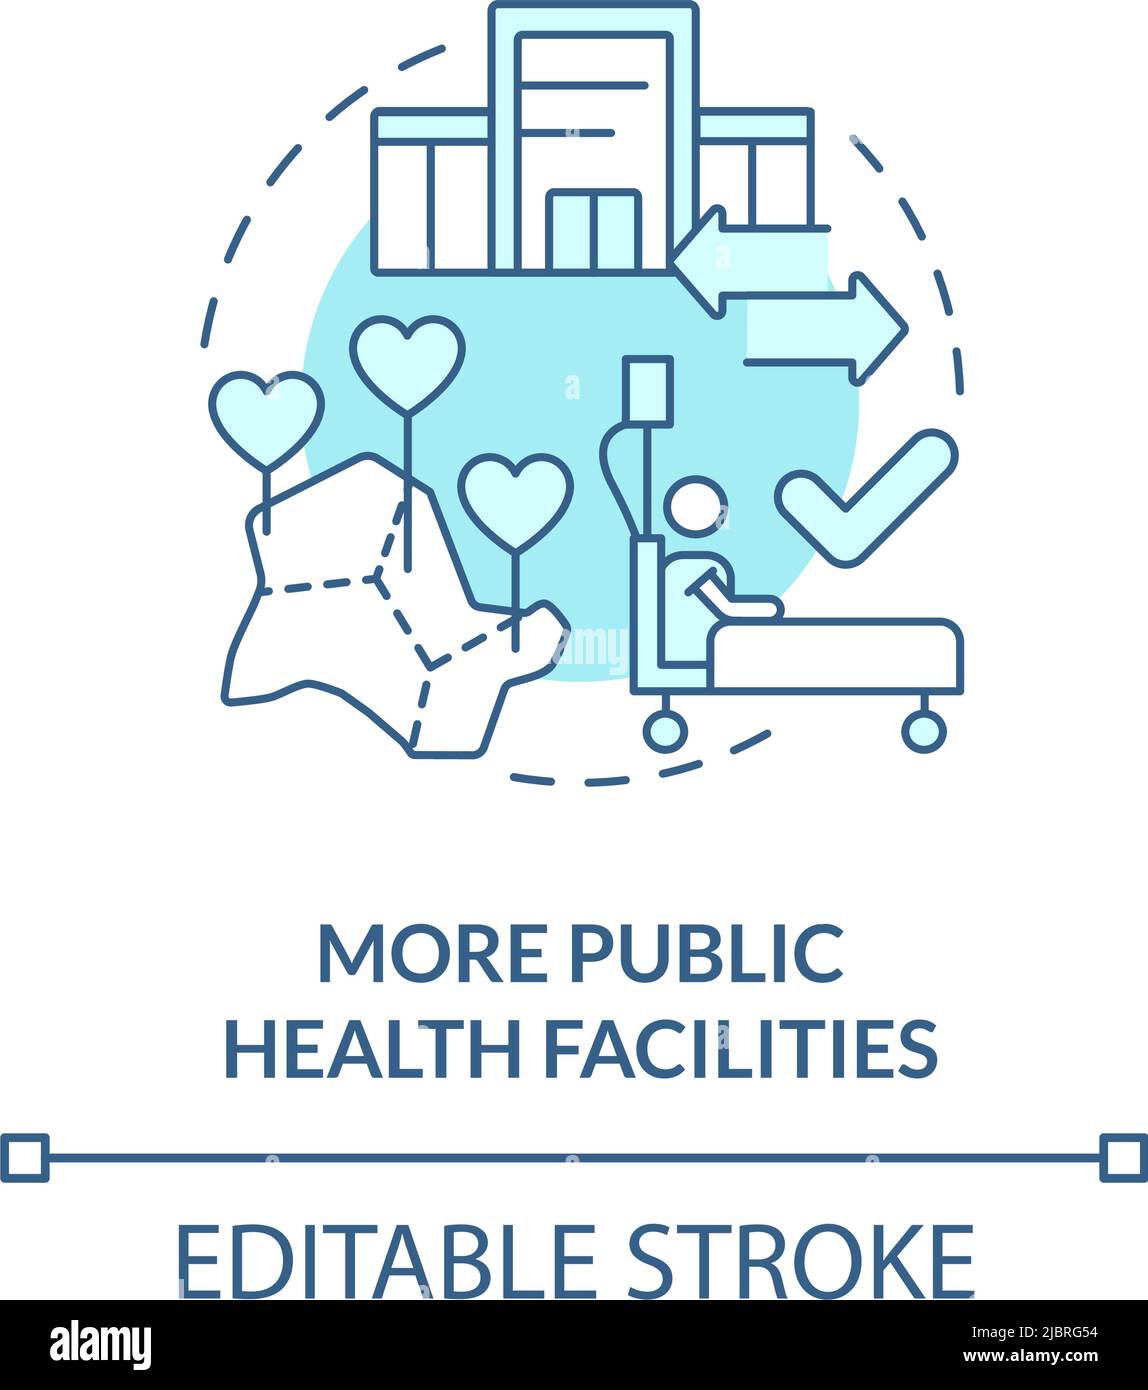 Más instalaciones de salud pública icono de concepto turquesa Ilustración del Vector